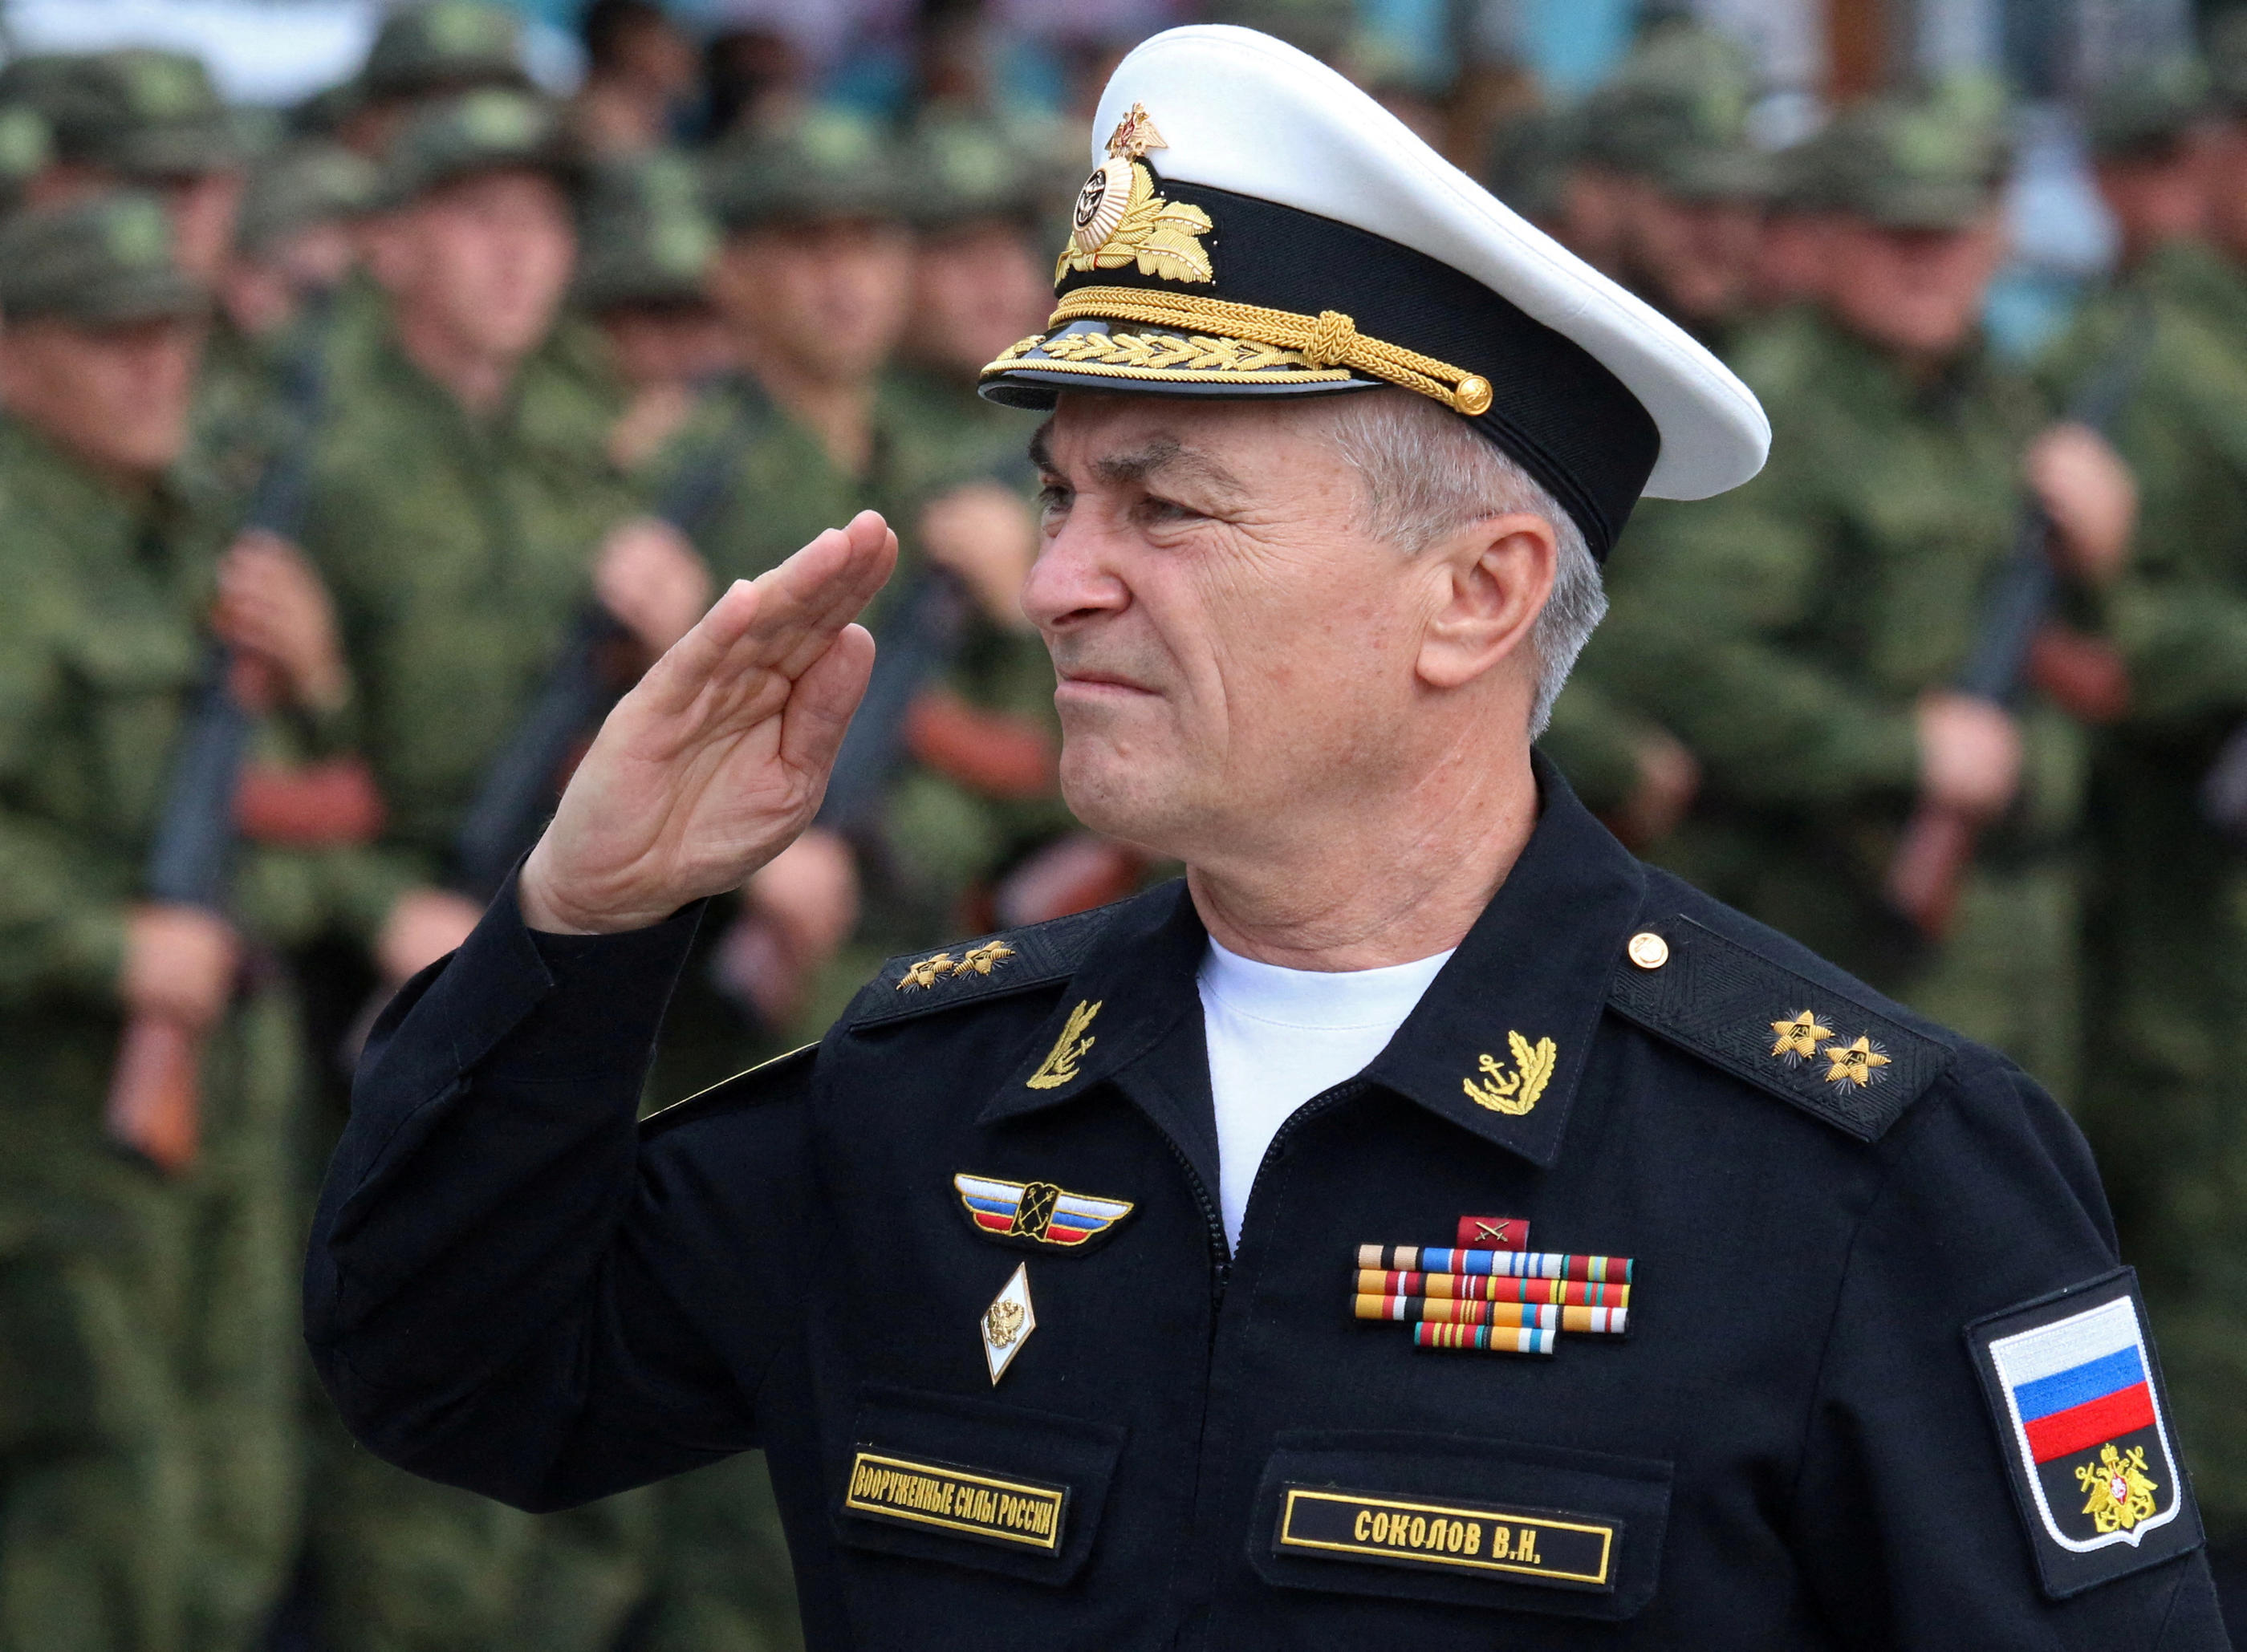 Le commandant de la flotte russe, Viktor Sokolov, a été donné pour mort par Kiev. Reuters/Alexey Pavlishak